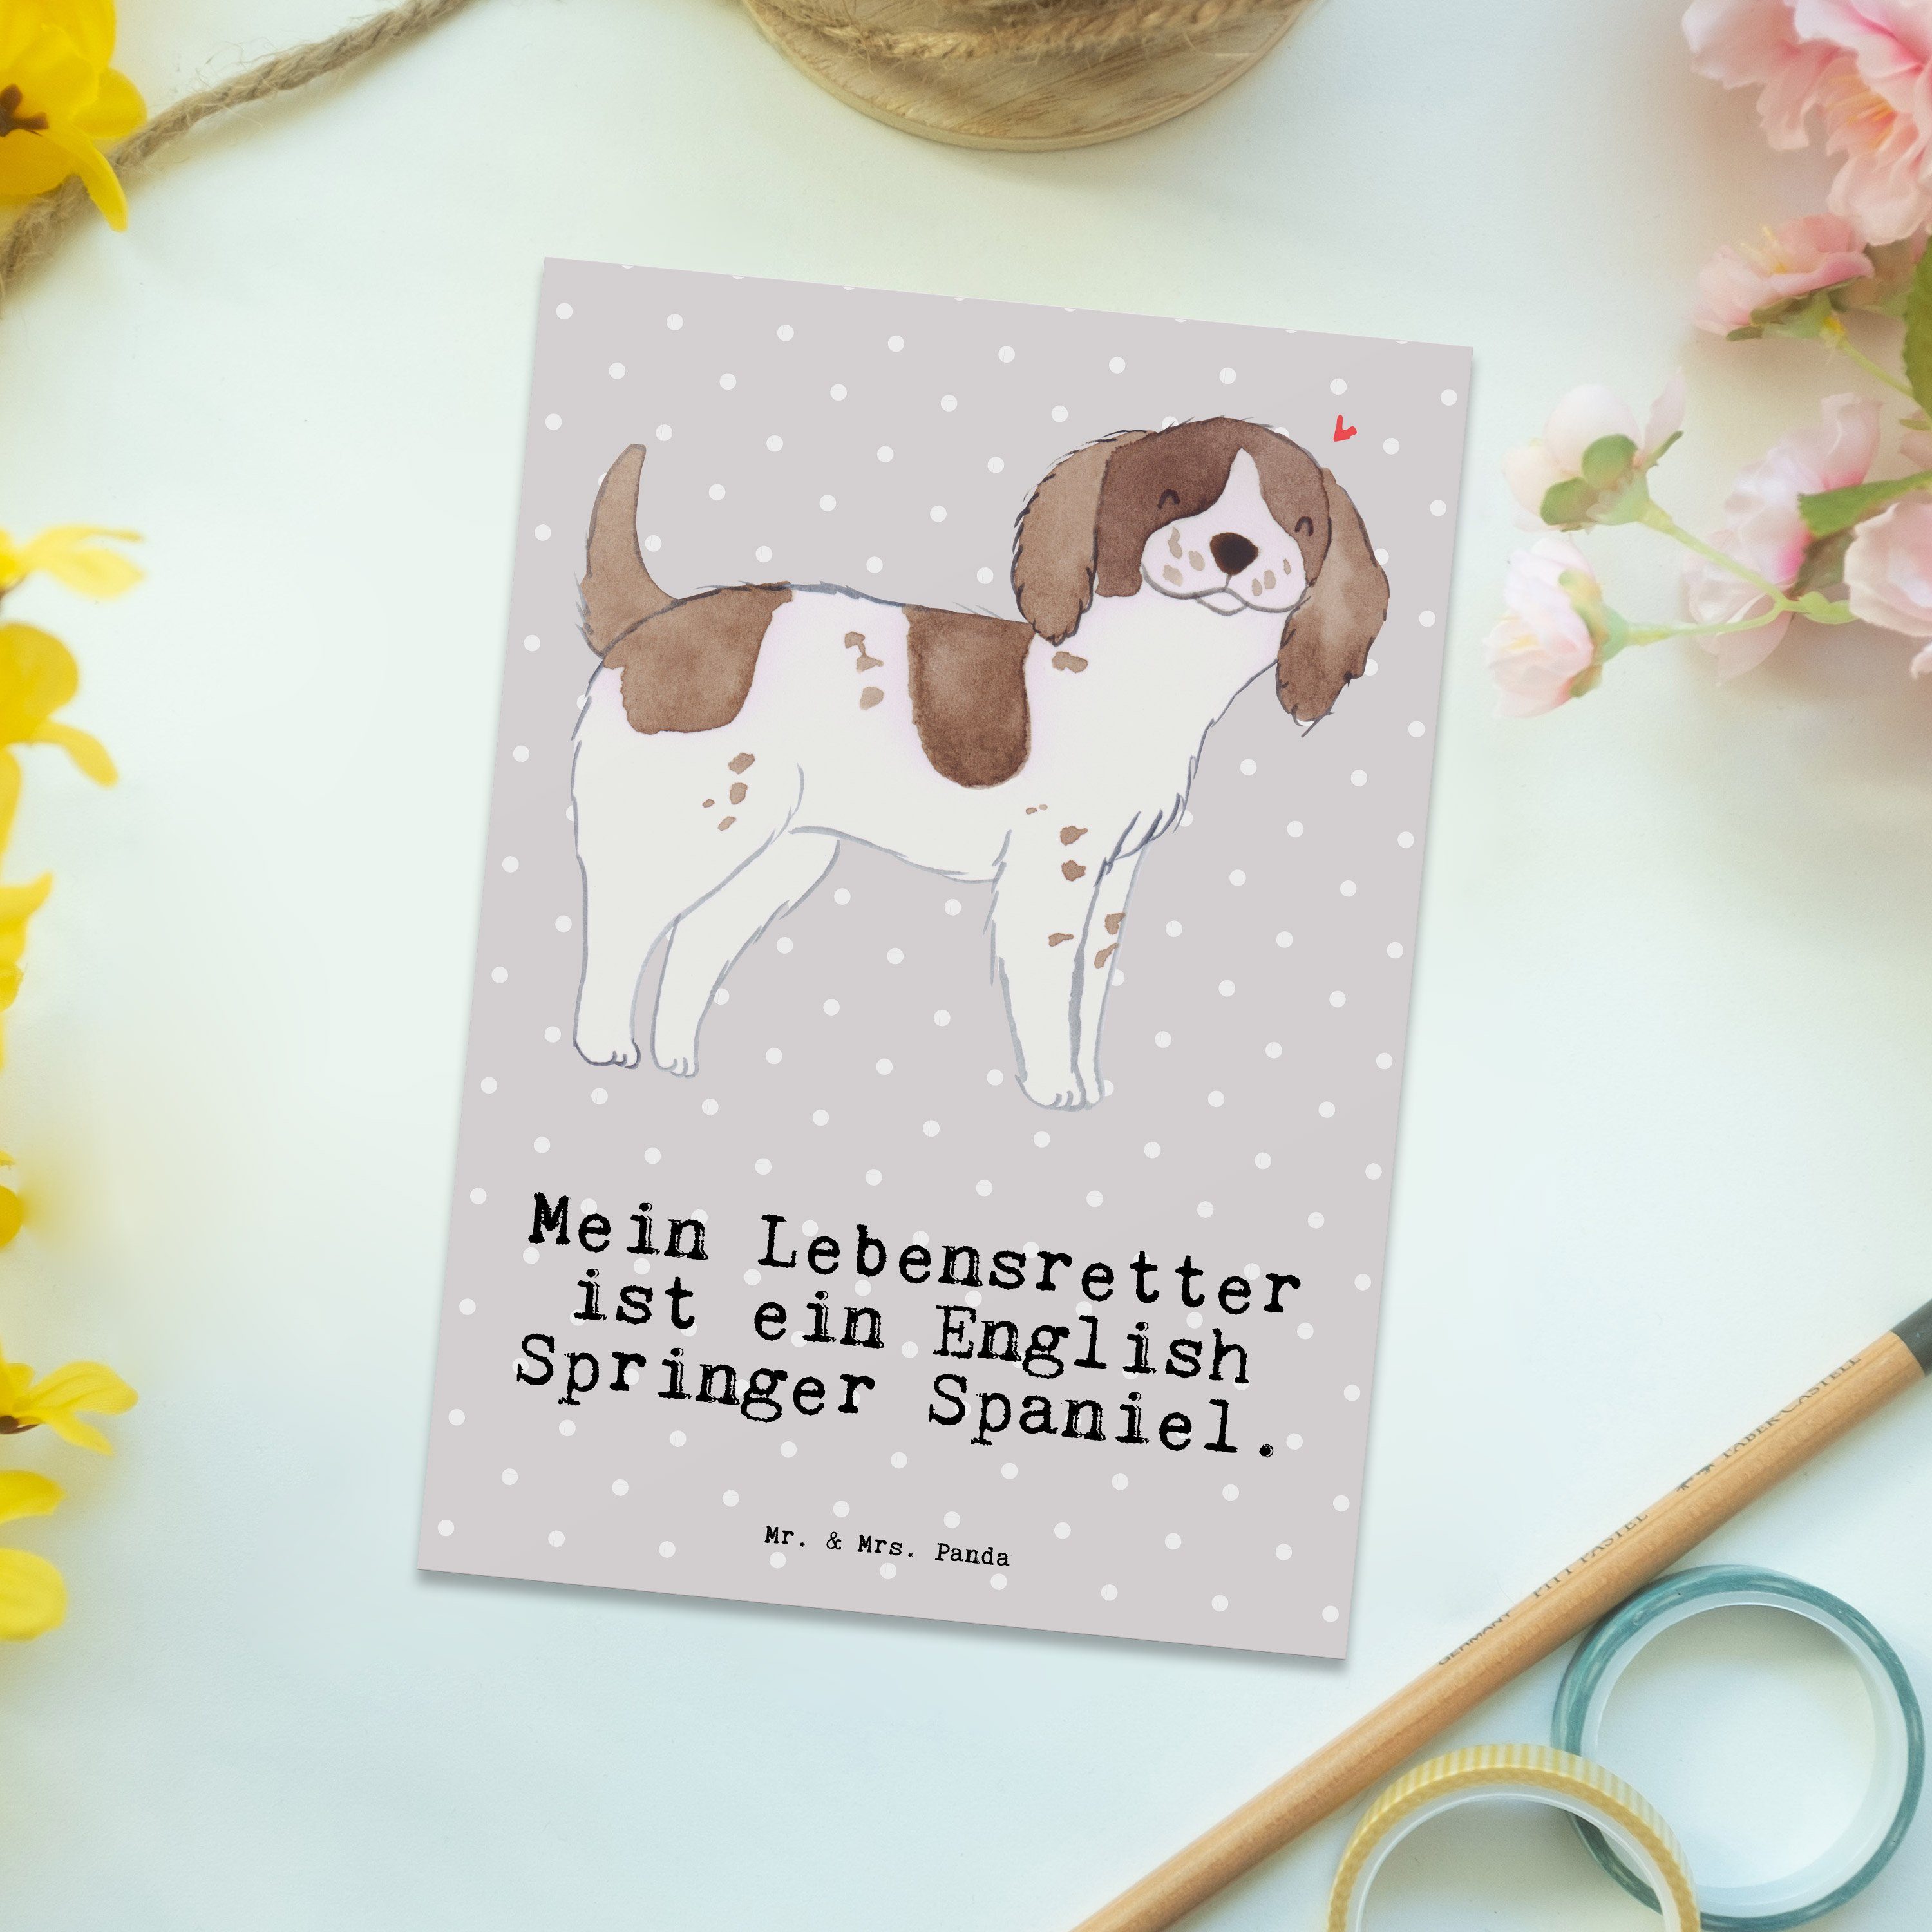 Spaniel & Hund - Grau English Postkarte Geschenk, Springer - Panda Lebensretter Mr. Mrs. Pastell